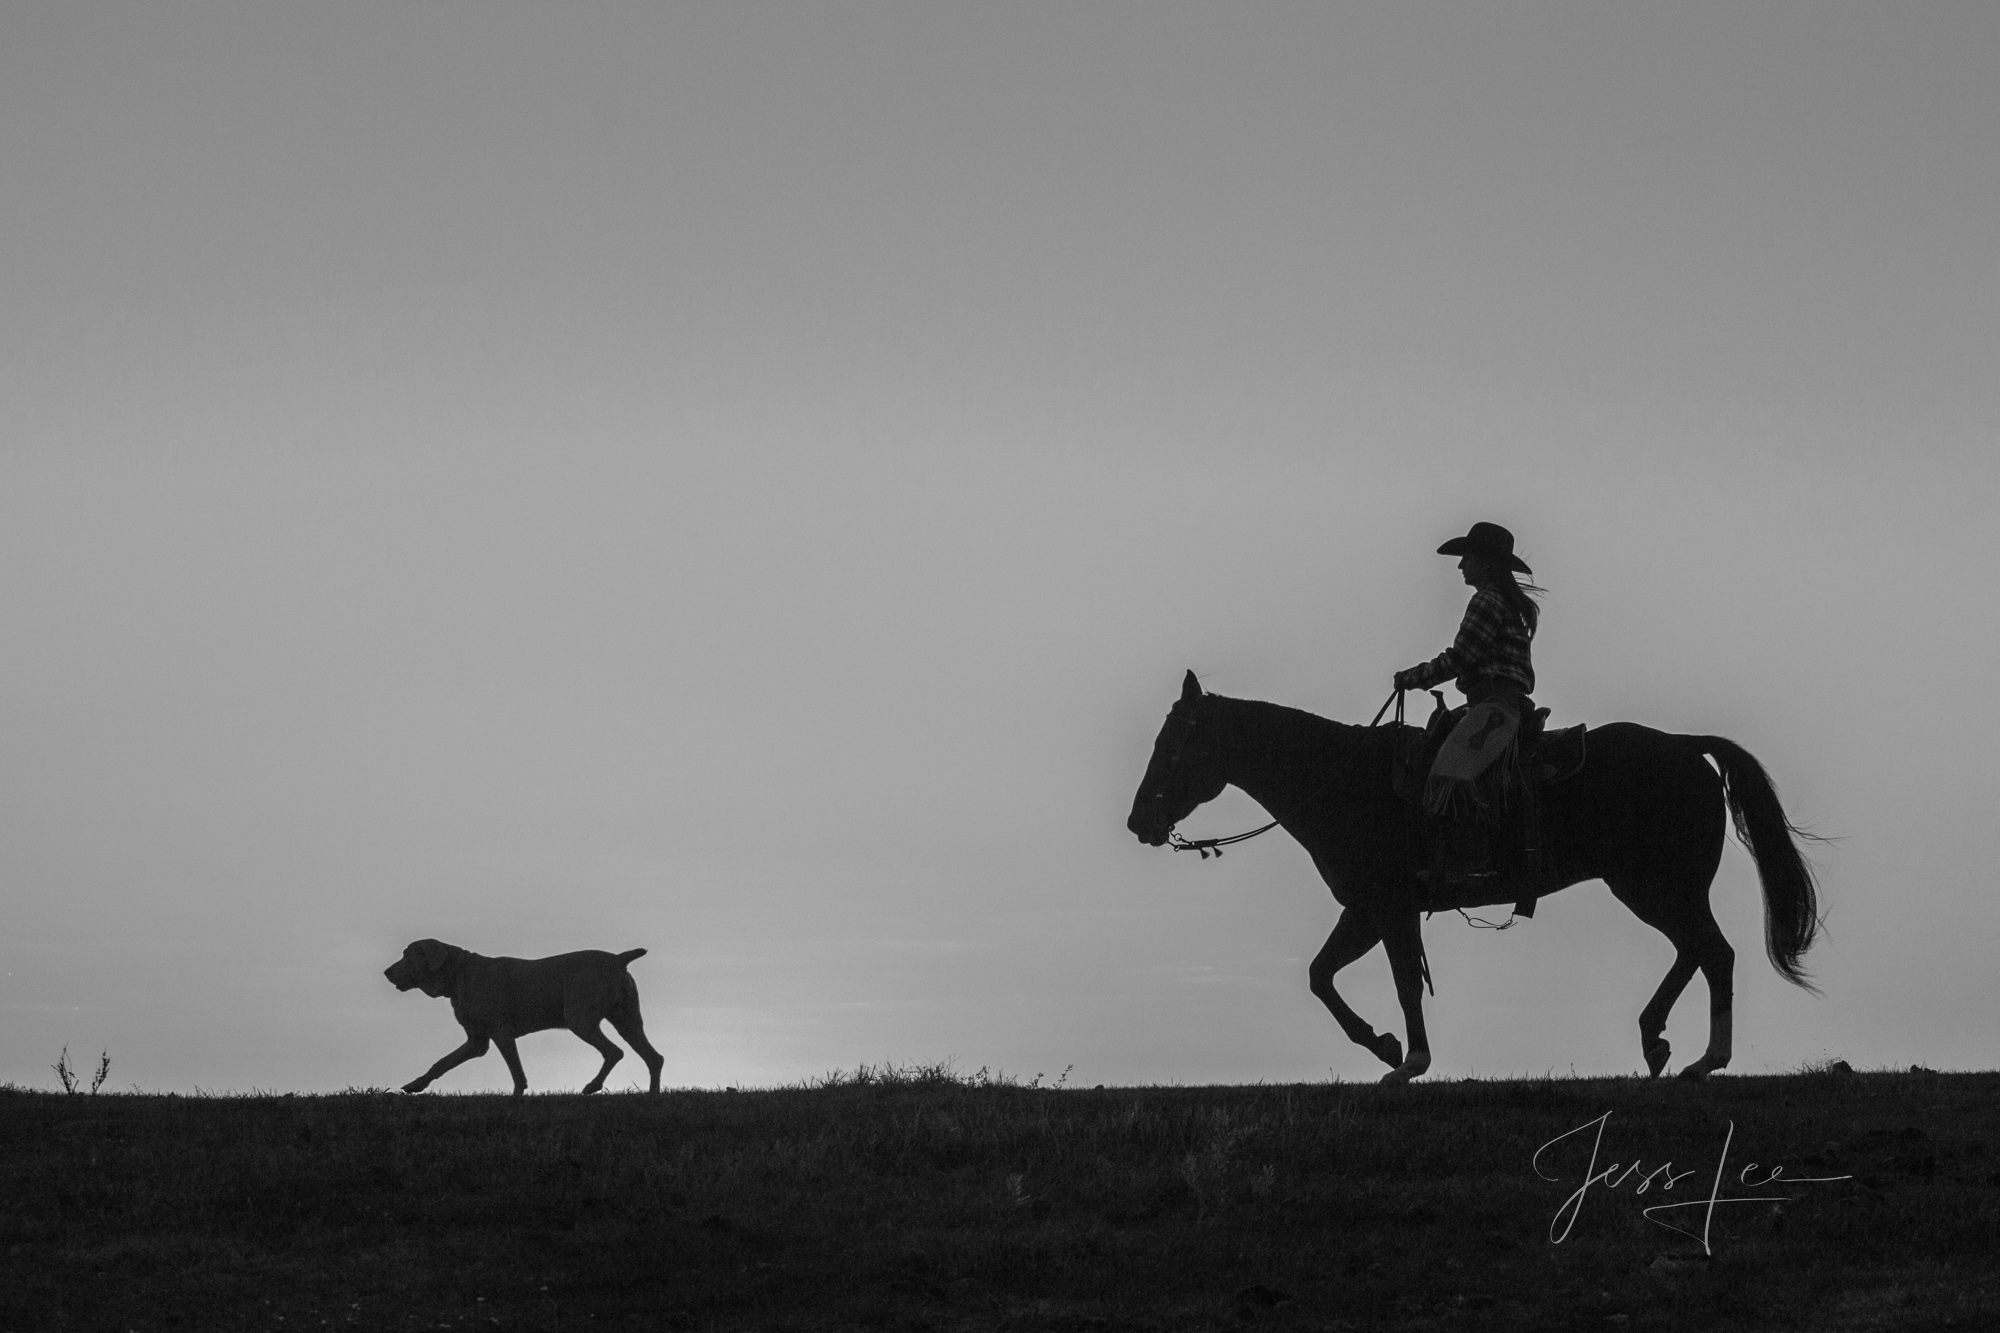 Cowboy Photography, dog photos, western photography, horse photos, black and white photos